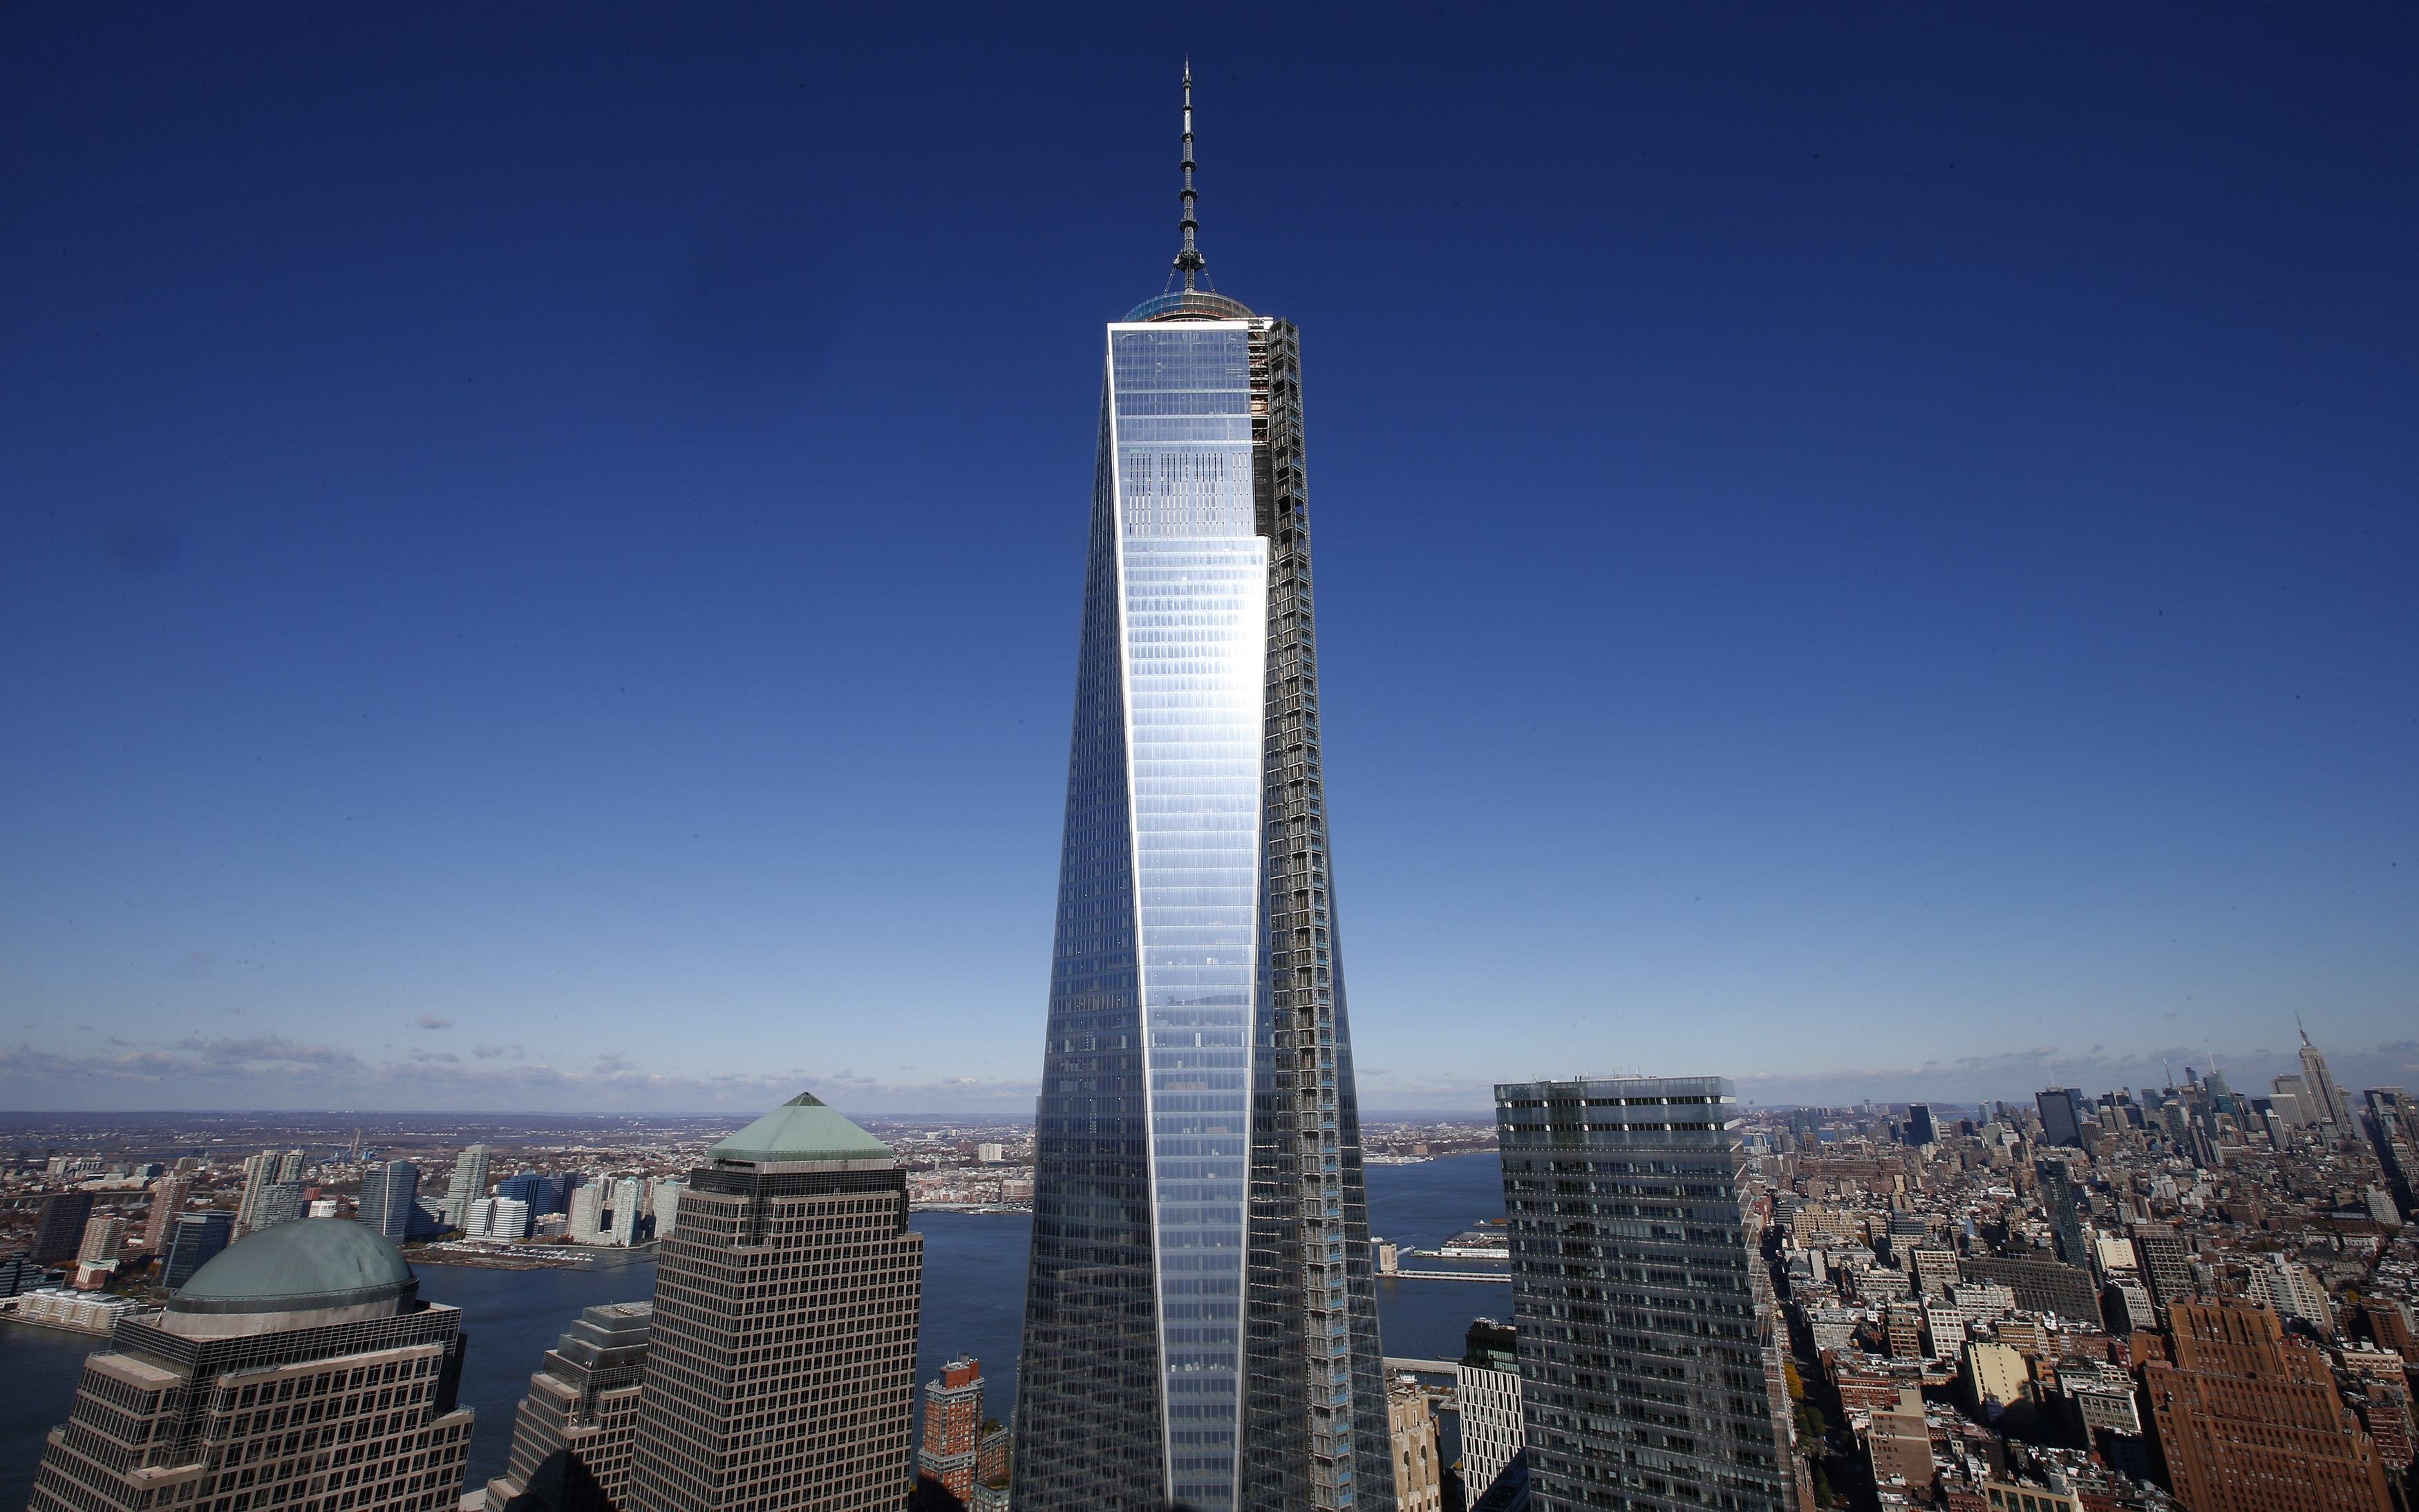 Остров небоскребов. Башня свободы в Нью-Йорке. Башни ВТЦ В Нью-Йорке. Всемирный торговый центр 1 Нью-Йорк. Всемирный торговый центр башня свободы.